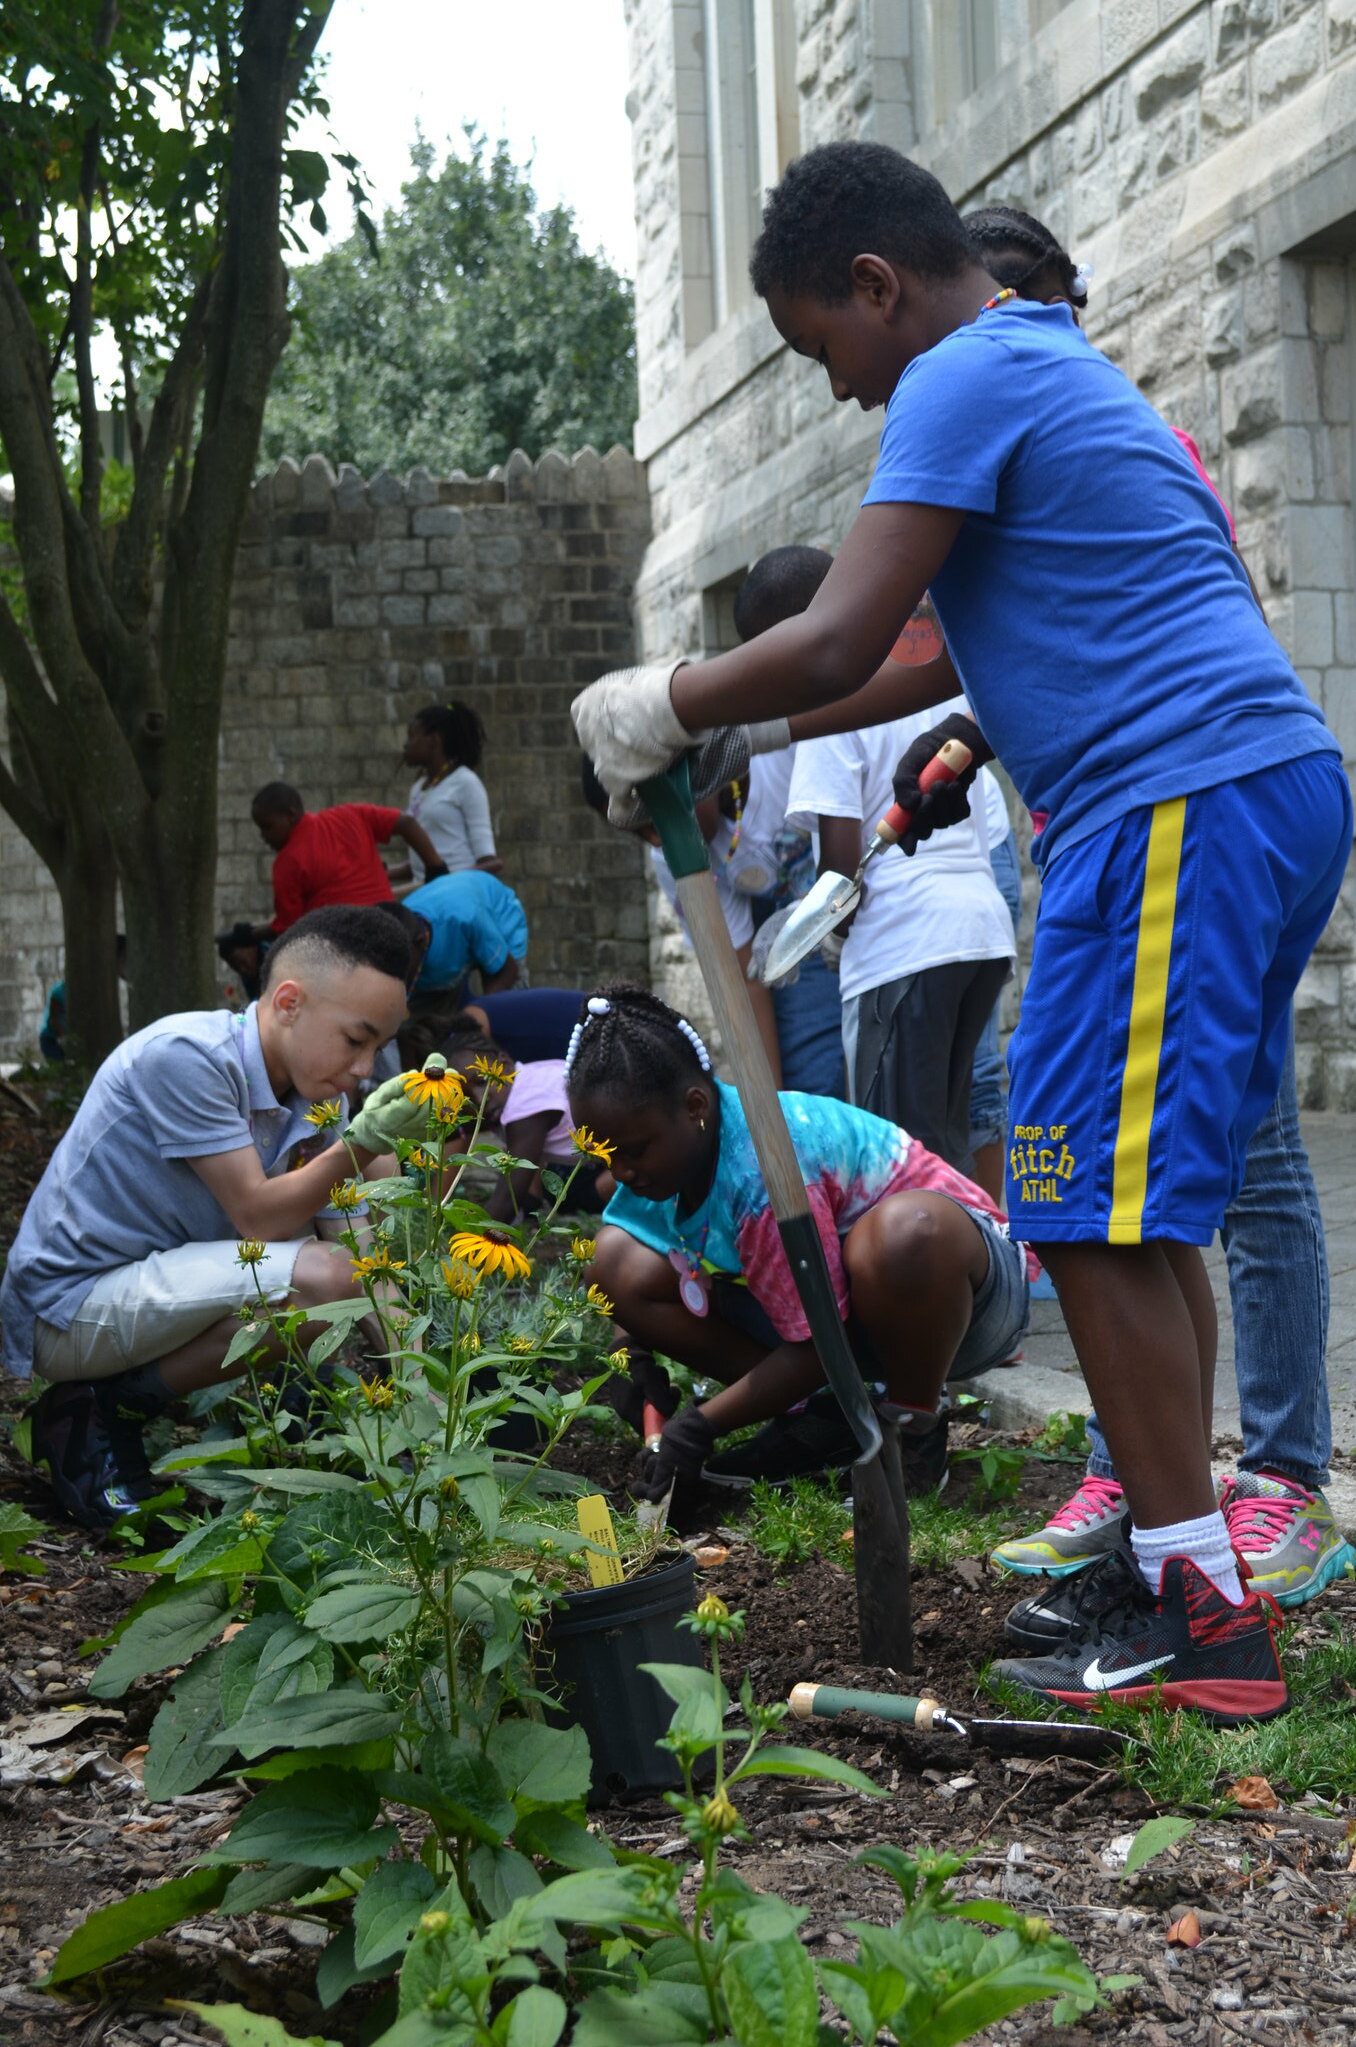 Kids gardening in Baltimore City